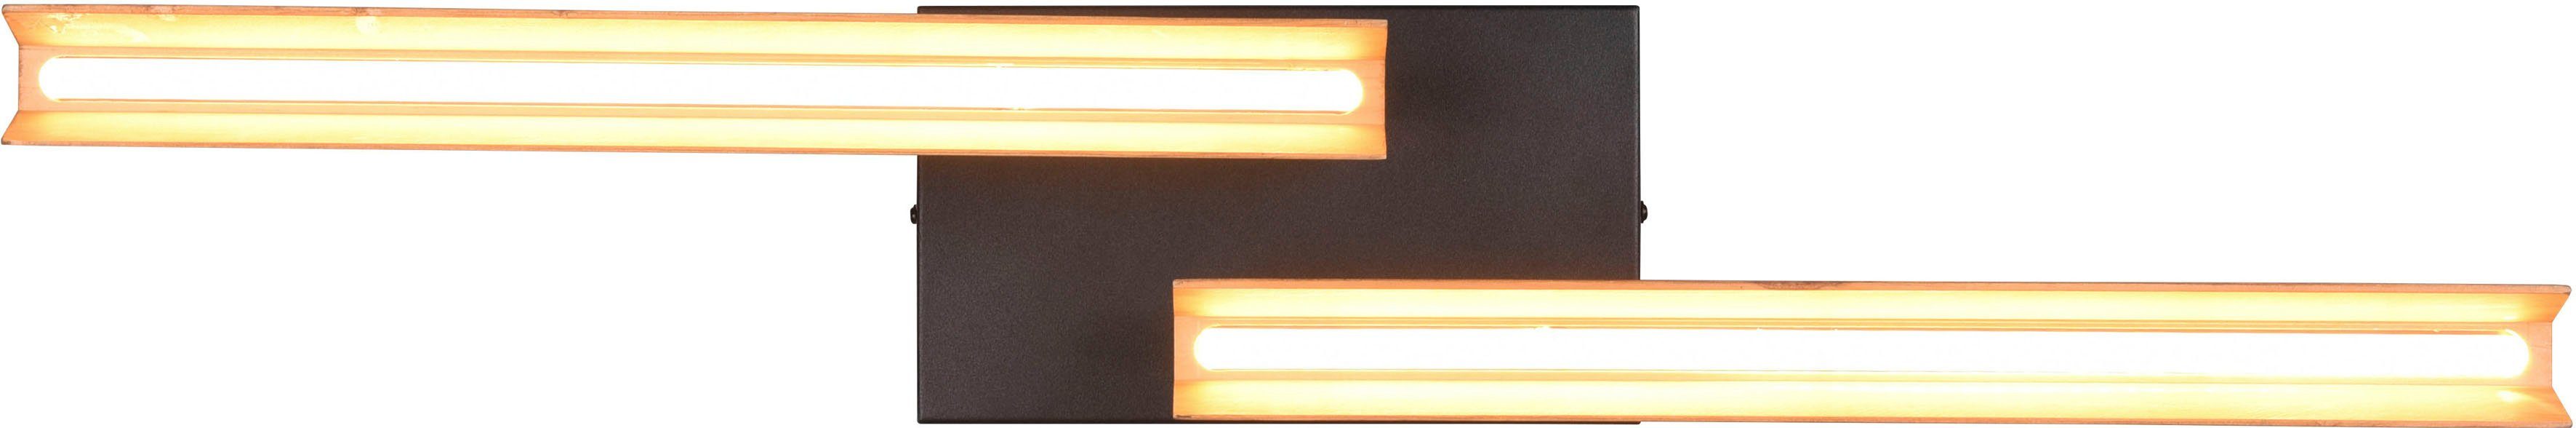 TRIO Leuchten LED Deckenleuchte Kerala, Dimmfunktion, mehrere Helligkeitsstufen, LED fest integriert, Warmweiß, Deckenlampe aus Holz + Metall, schwenkbar, 3 Dimmstufen, LED warmweiß